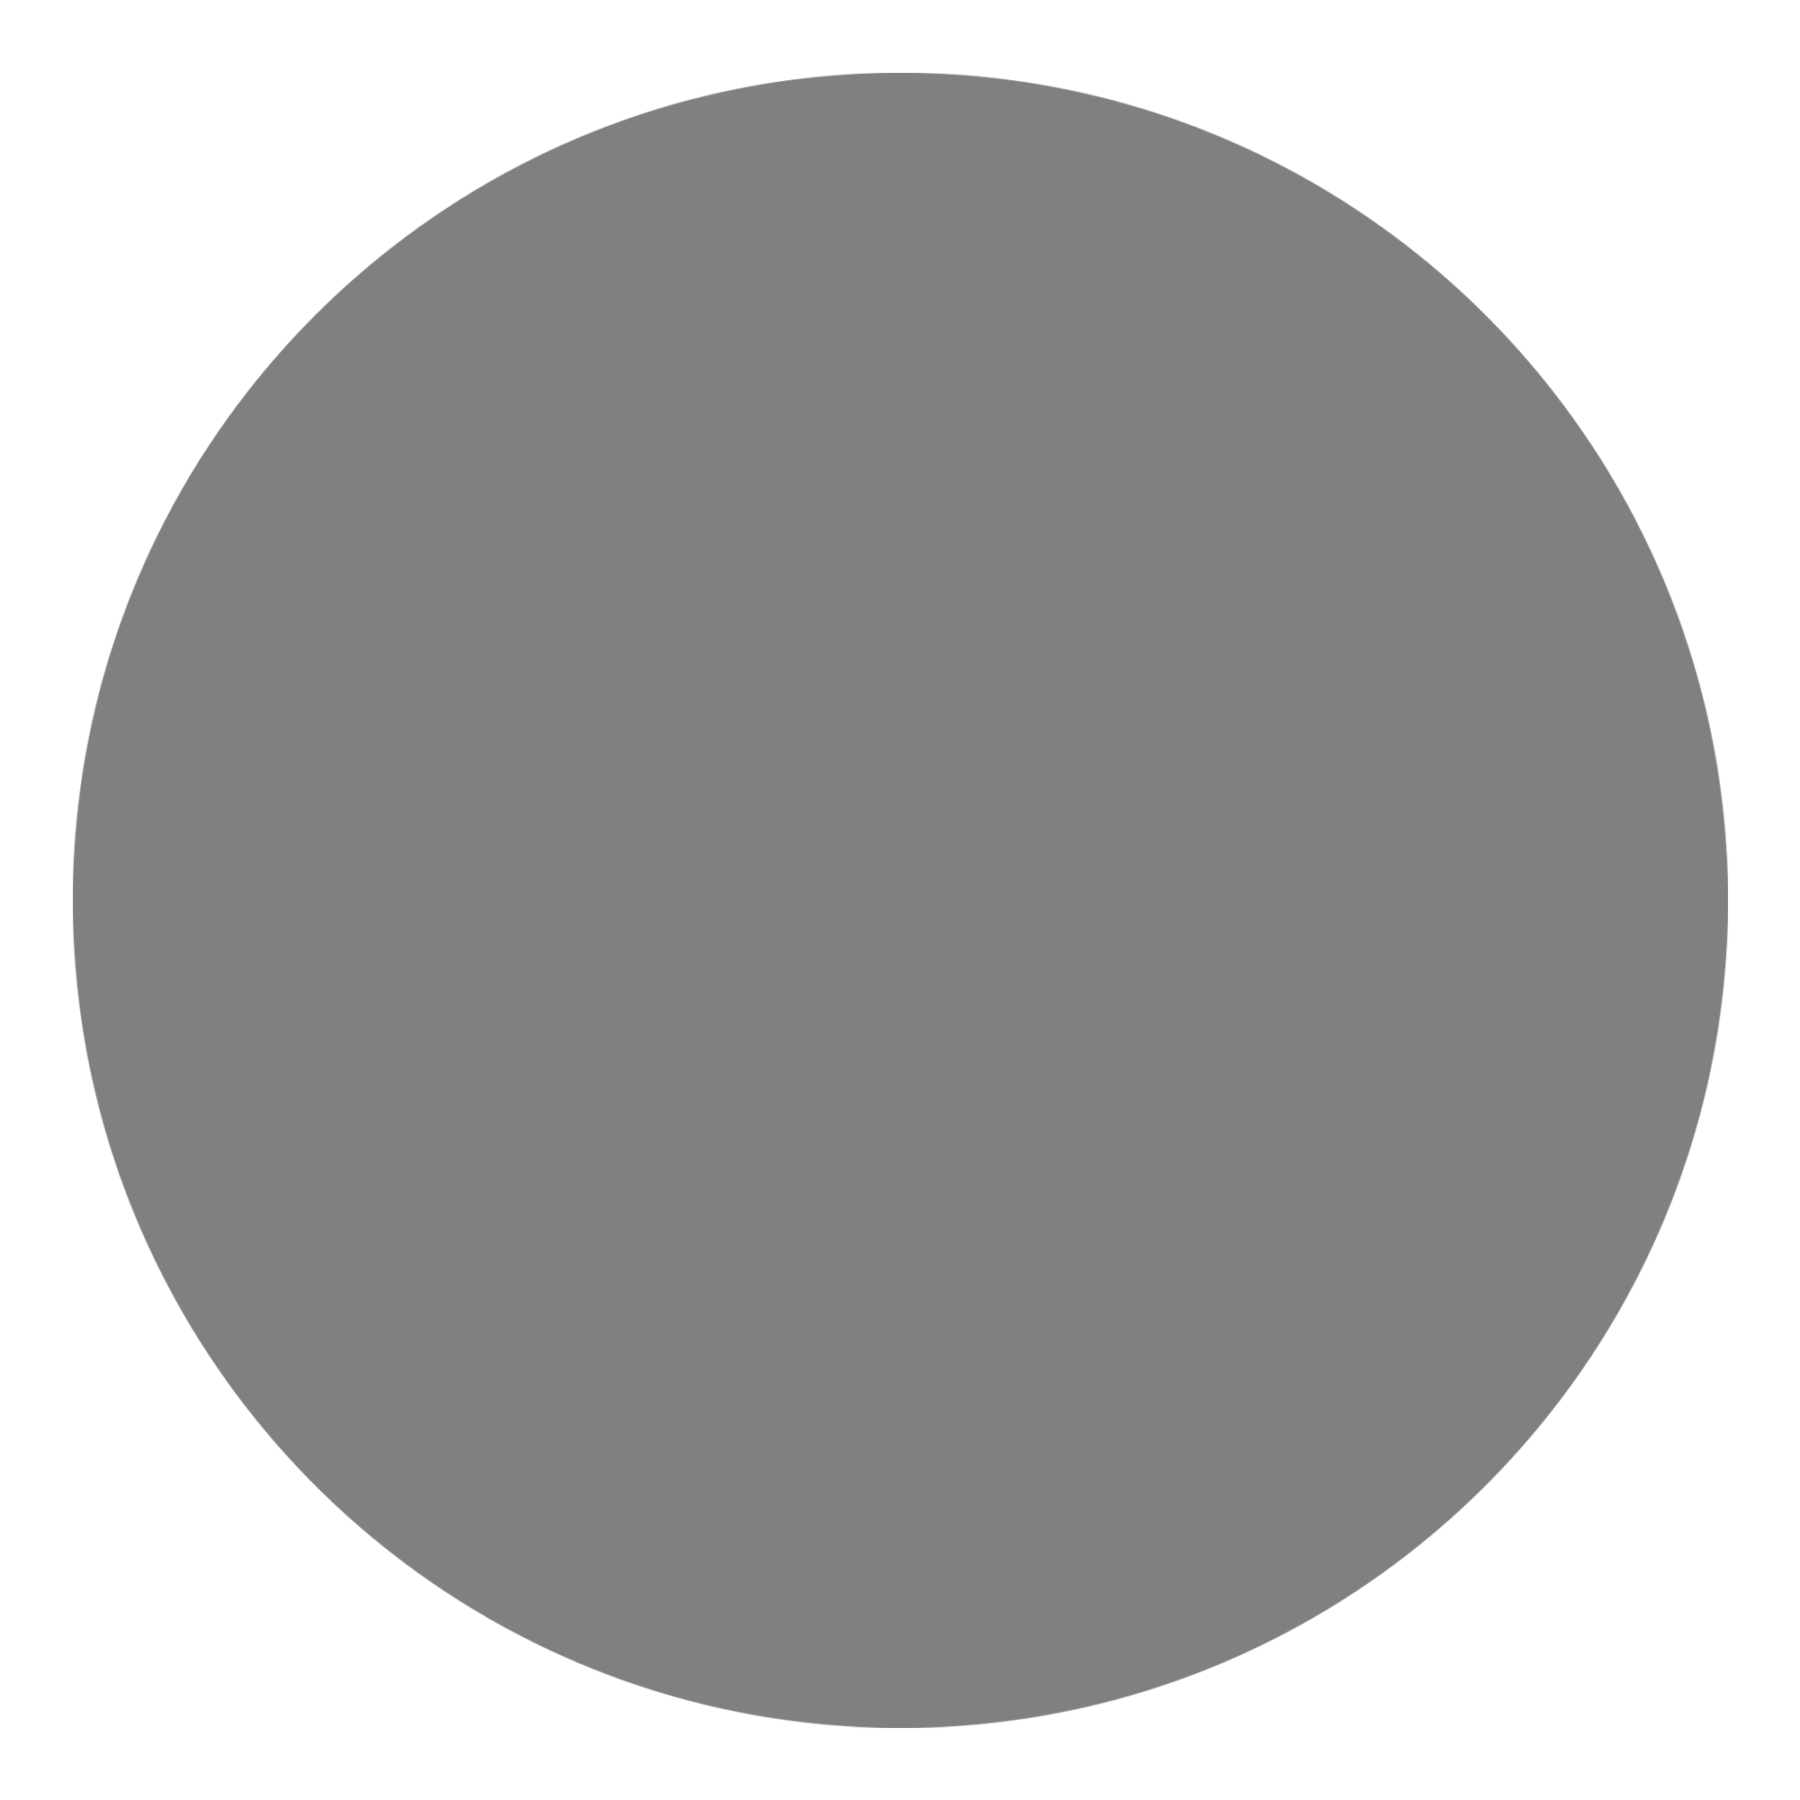 attribute-color-808080-gray